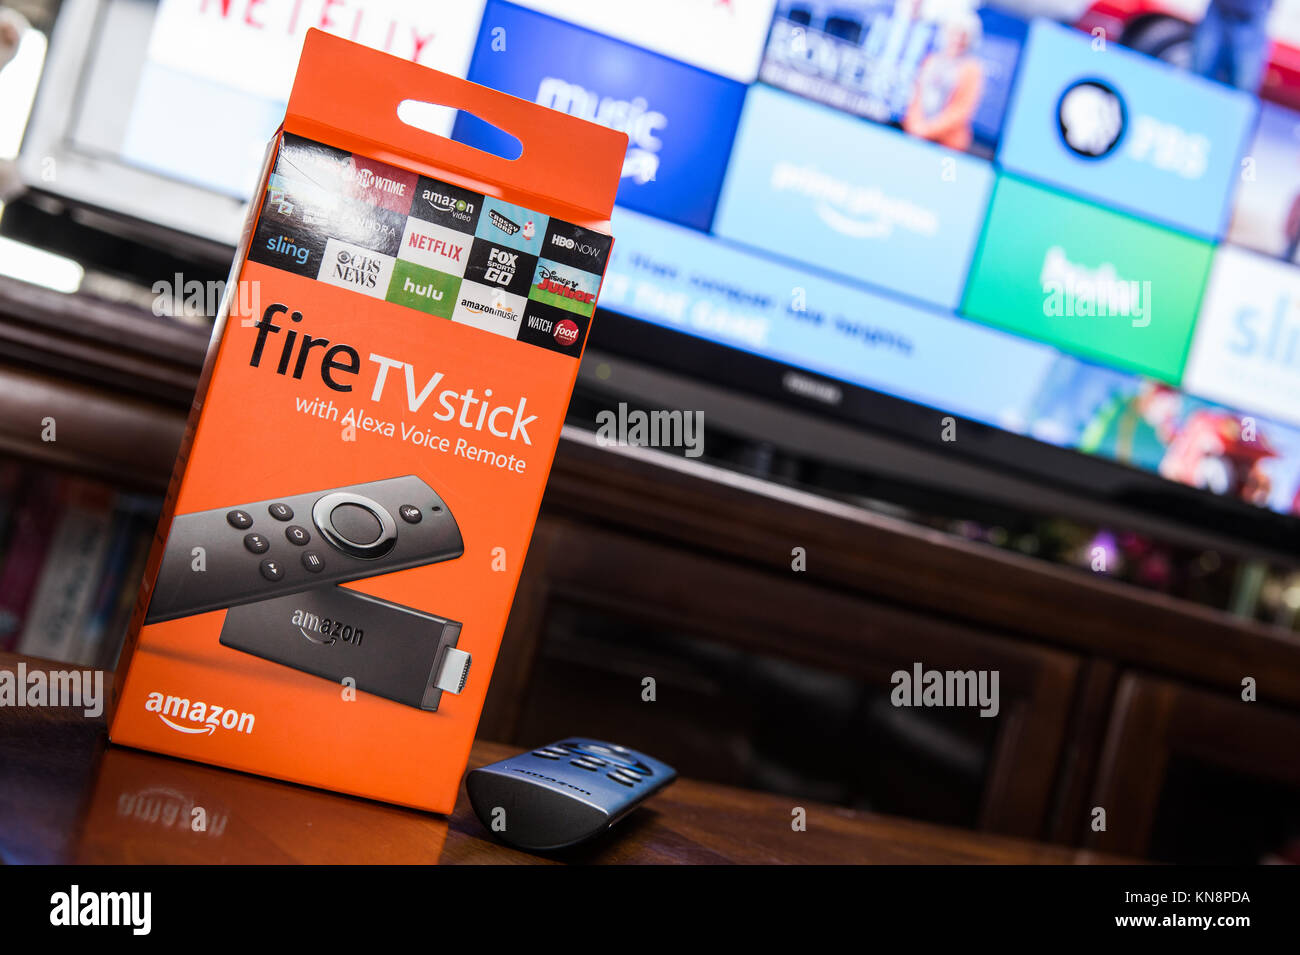 Seconda generazione Amazon TV Stick incendio con Alexa voce controllo remoto Foto Stock